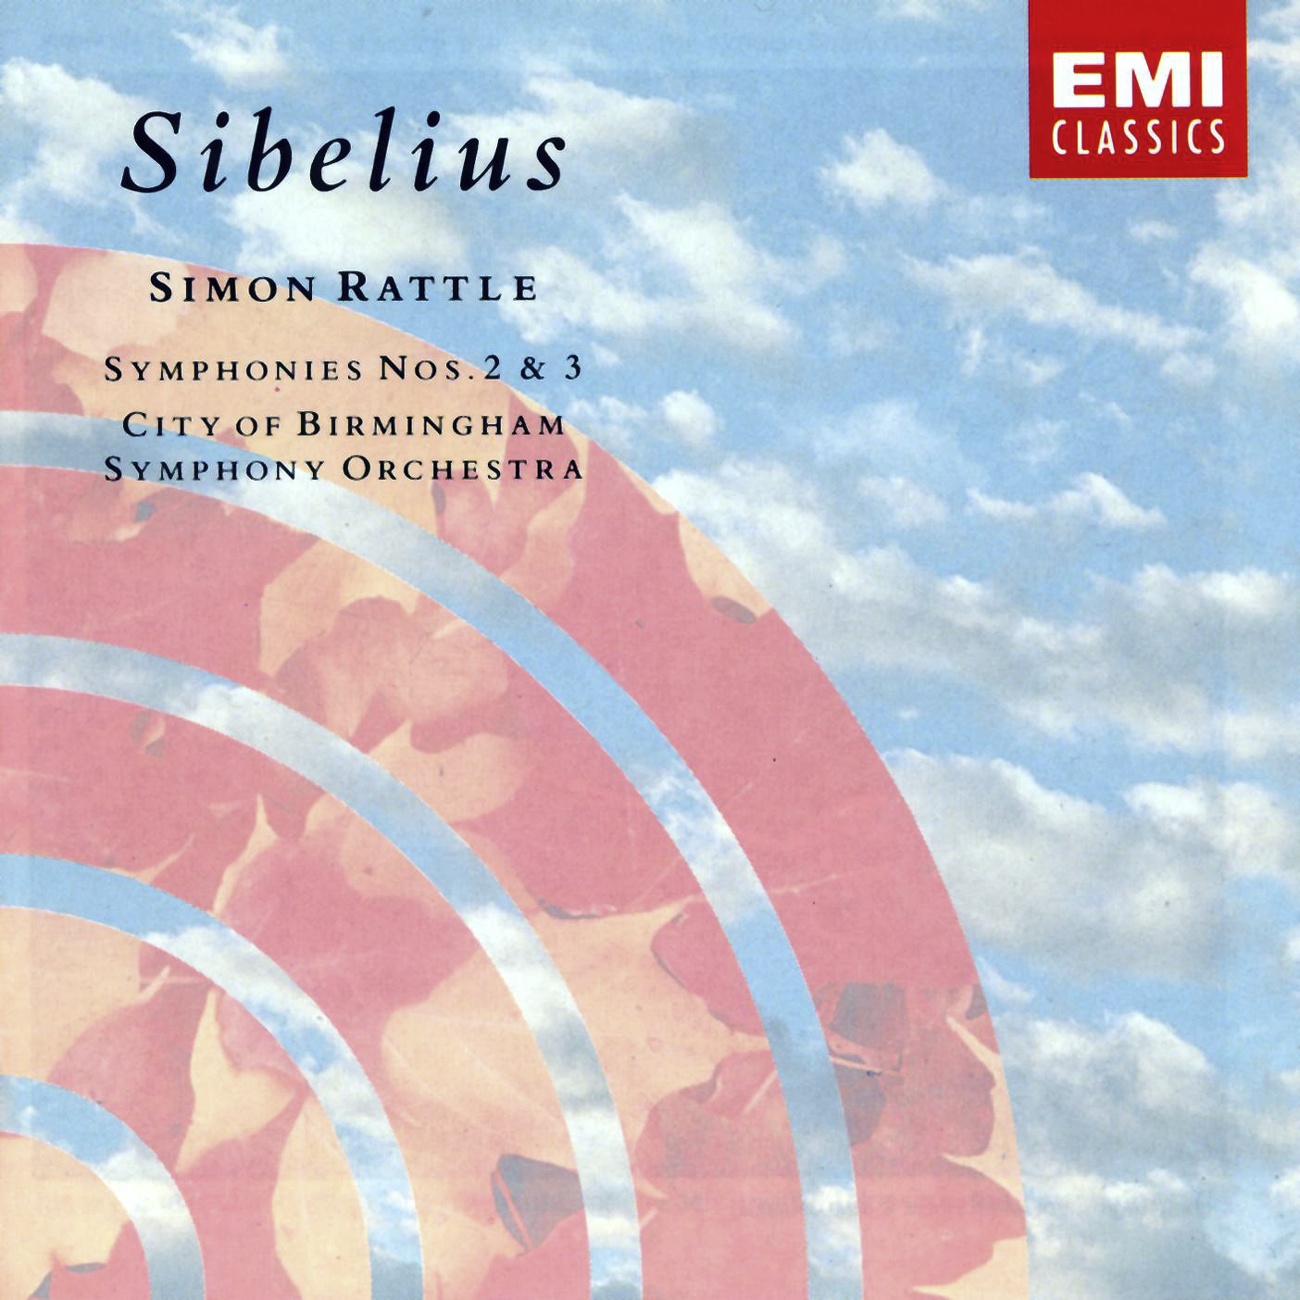 Sibelius: Symphony No. 3 in C, Op. 52: III. Moderato-Allegro (ma non tanto)